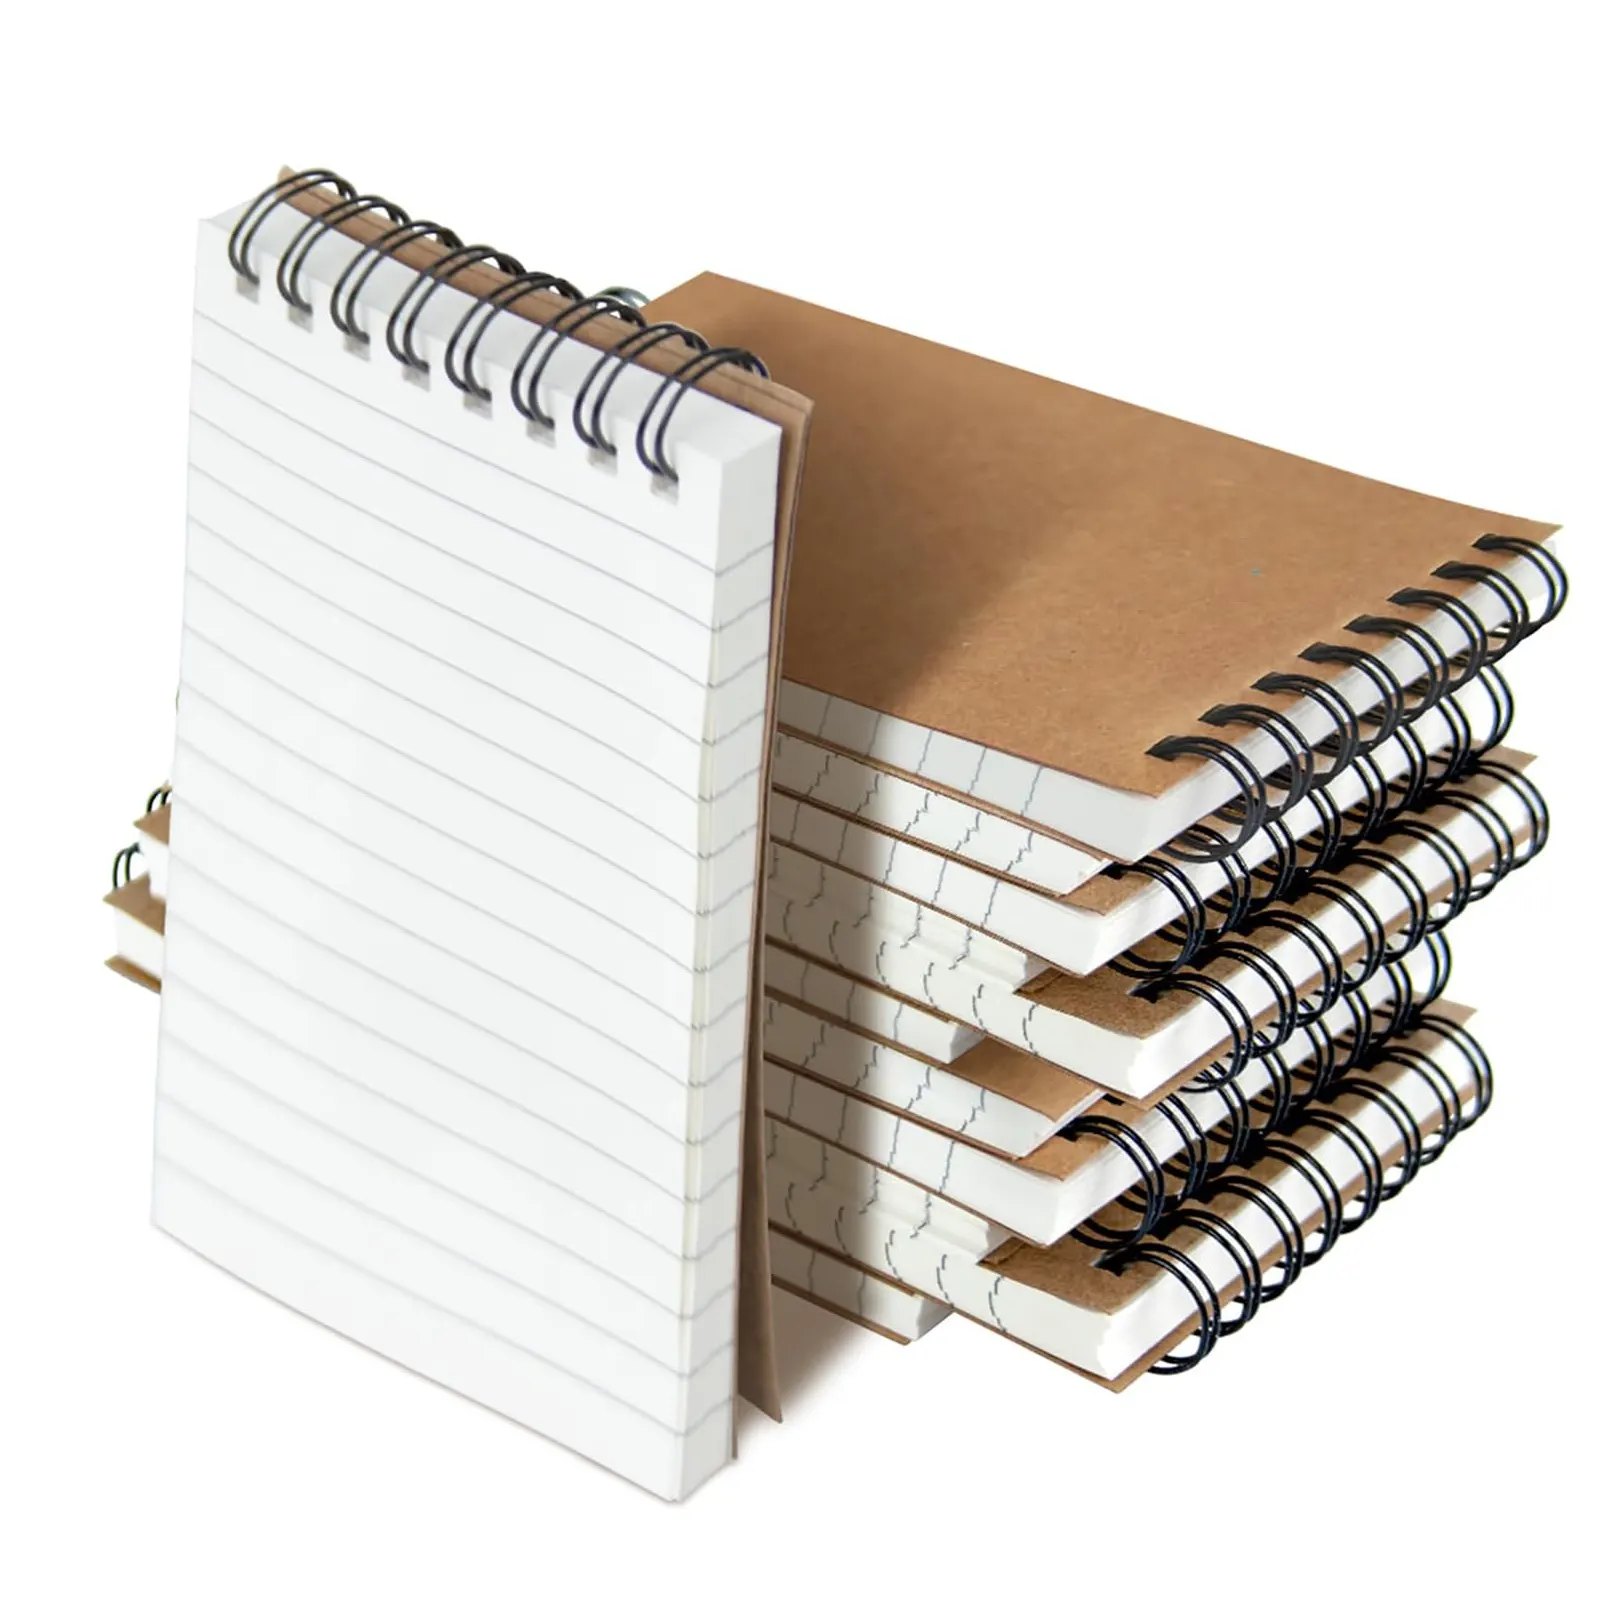 günstiges Home Office Akademie Arbeitspapier Mini-Spiral-Notizbuch in Tasche braun kleiner Notizblock handgefertigtes Papier